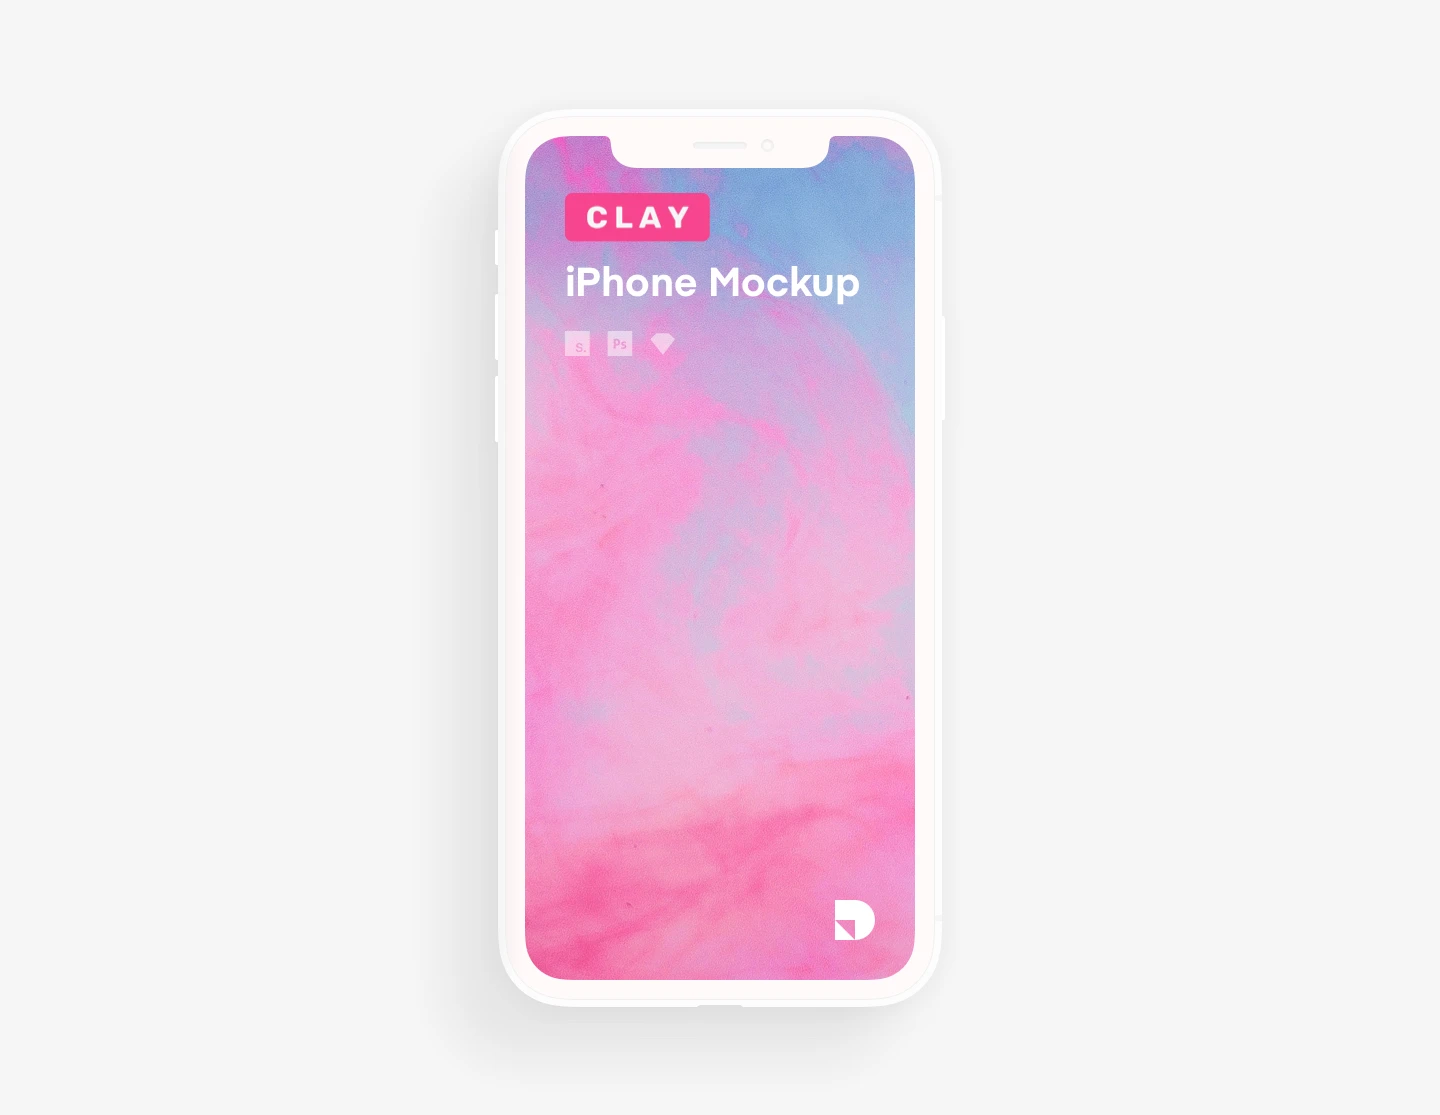 Clay — A free minimalist mockup kit